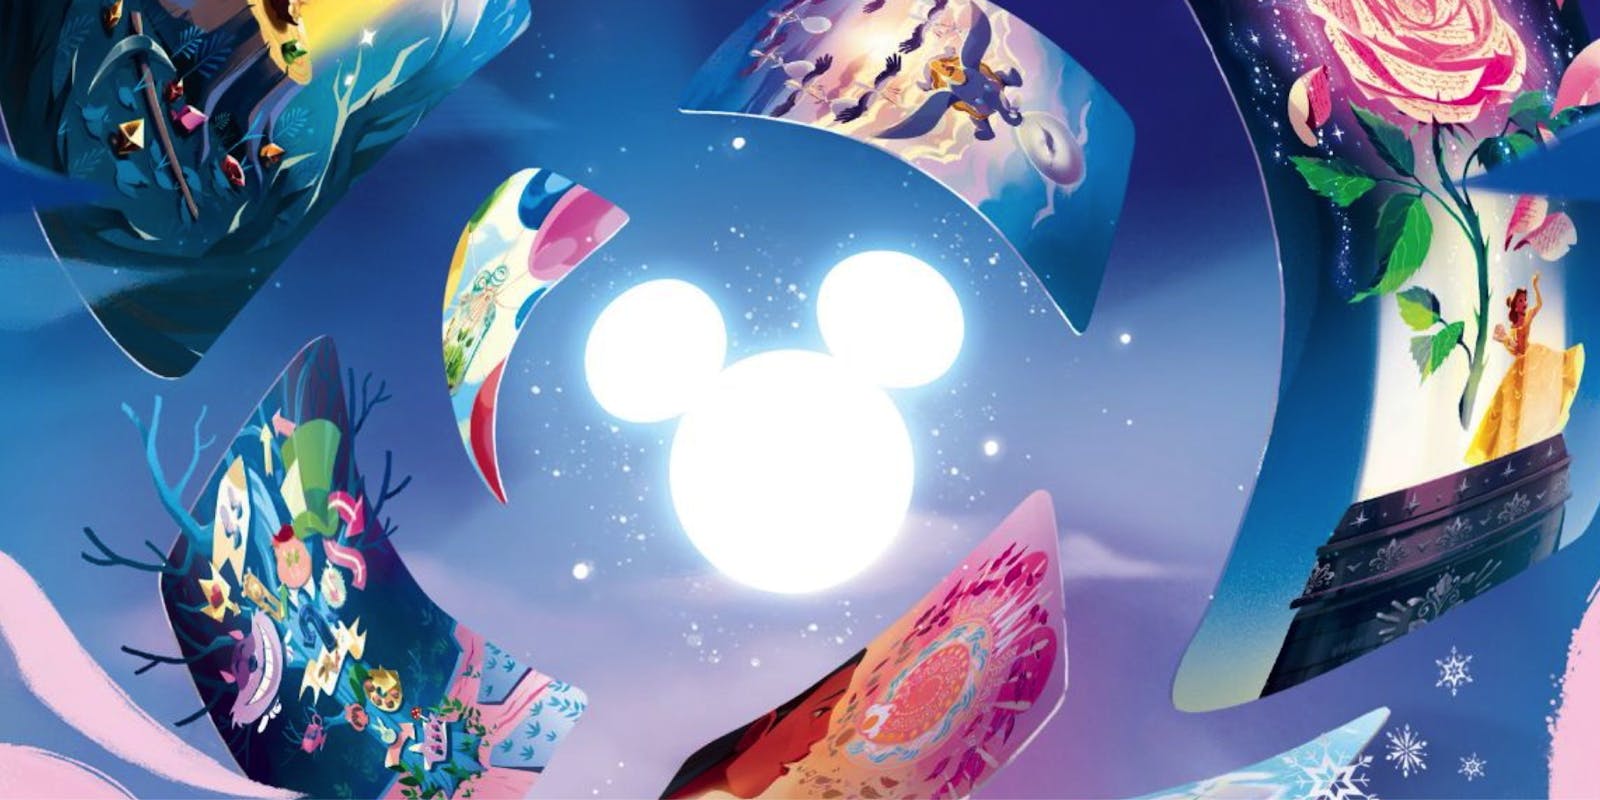 [AVIS] Le jeu à succès Dixit sort une édition spéciale Disney !